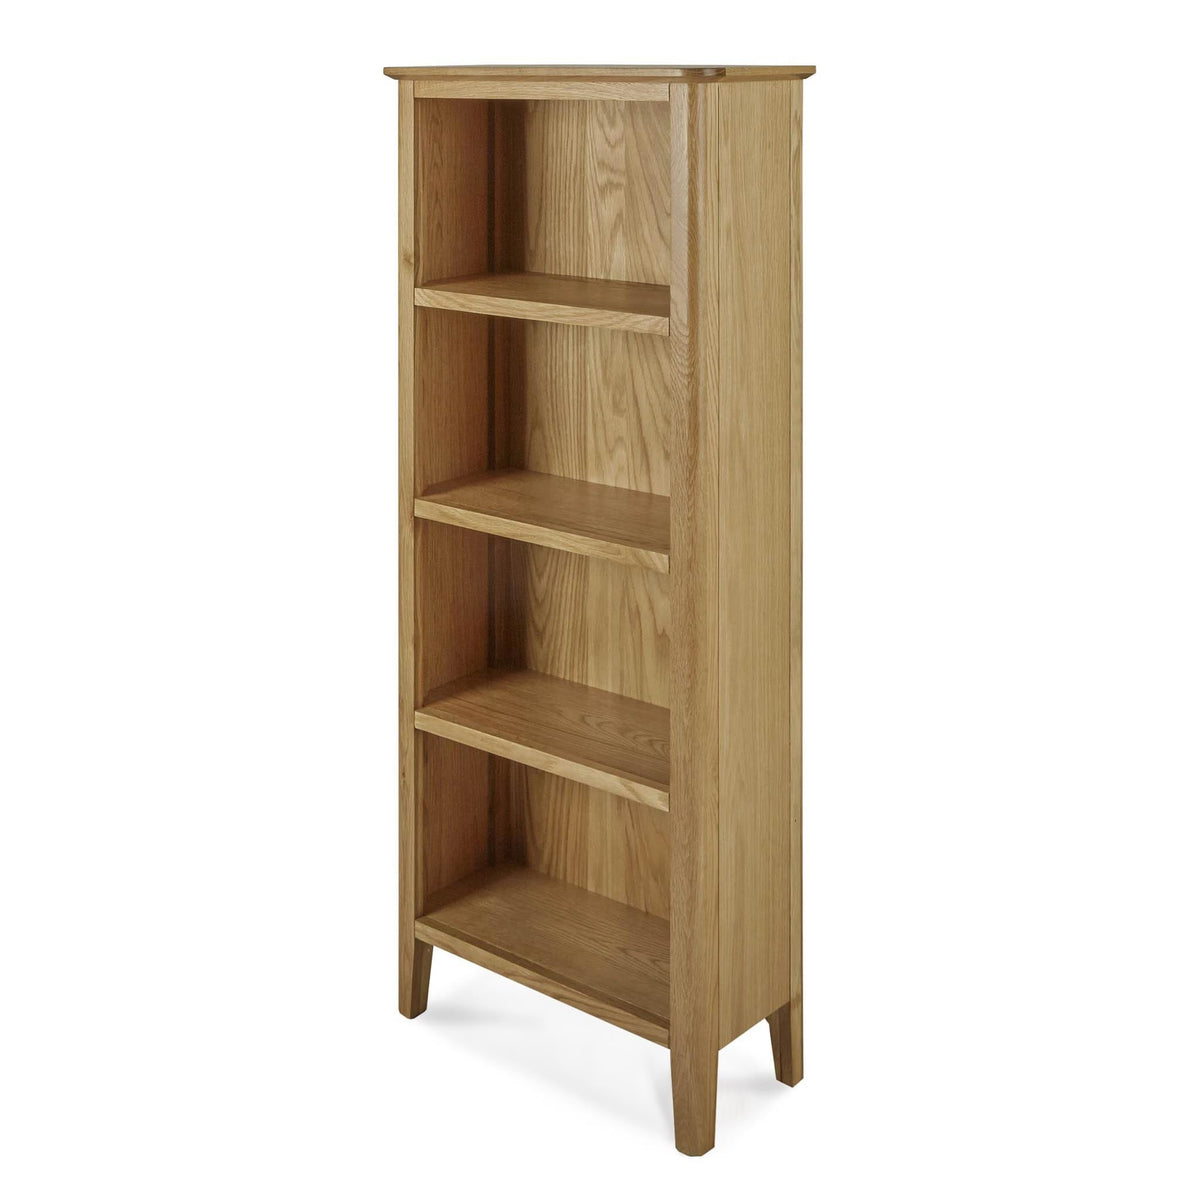 Alba Oak Slim Bookcase - Angled view